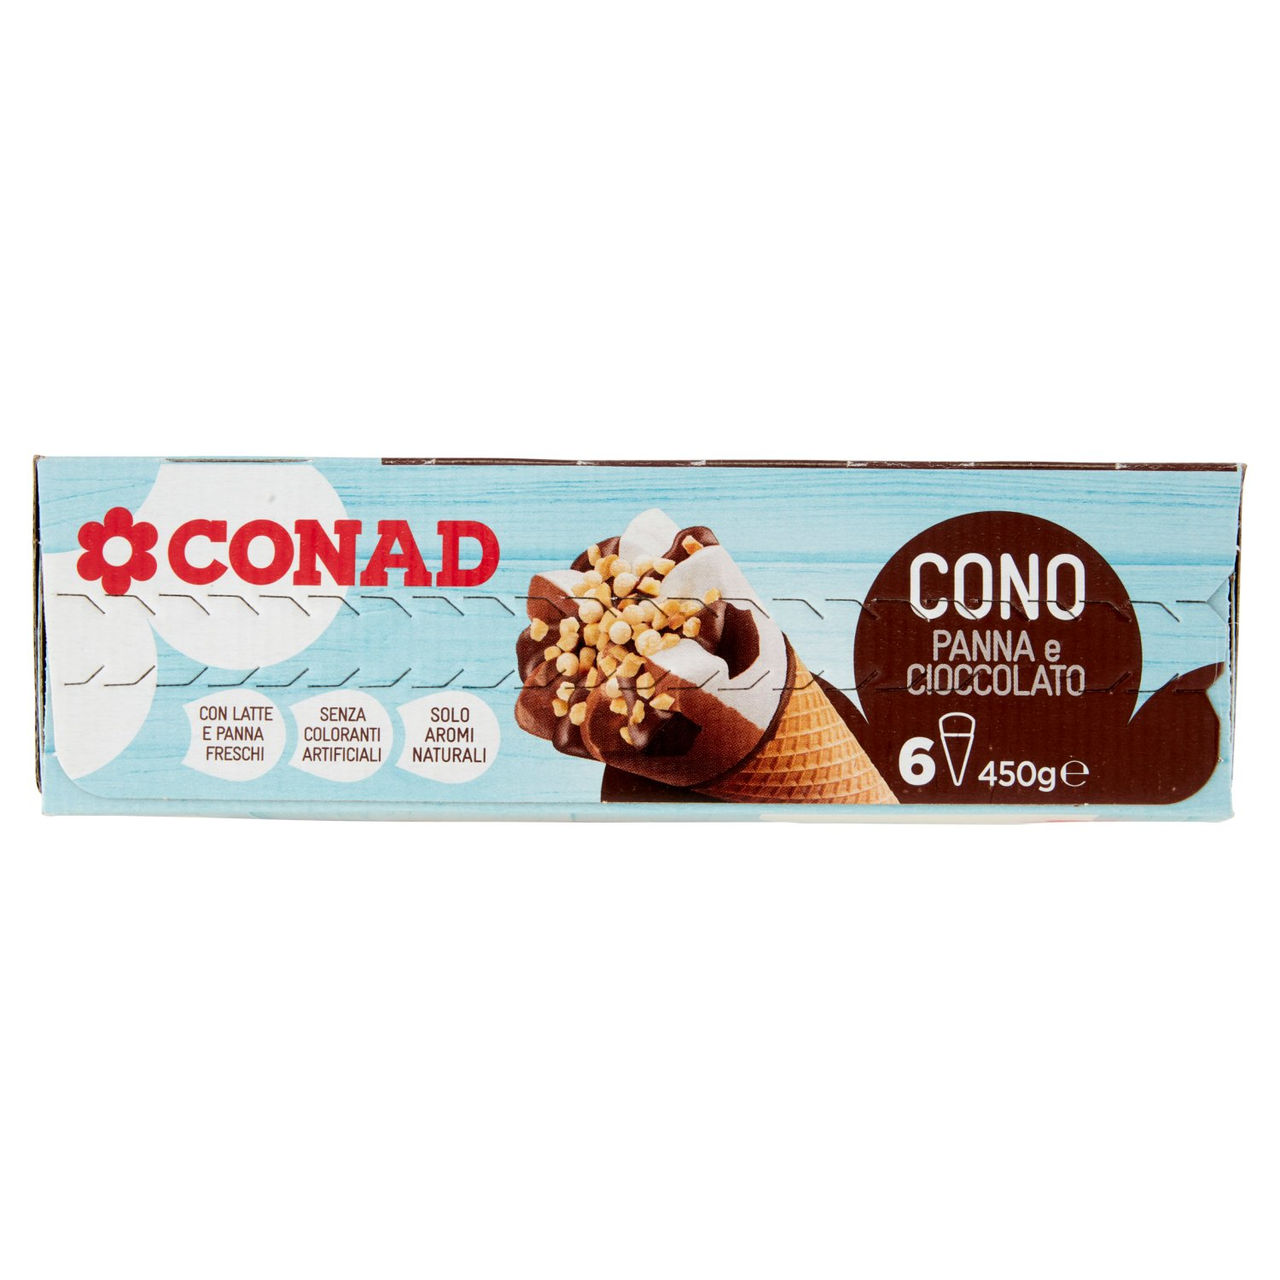 Cono Panna e Cioccolato 6 gelati Conad online